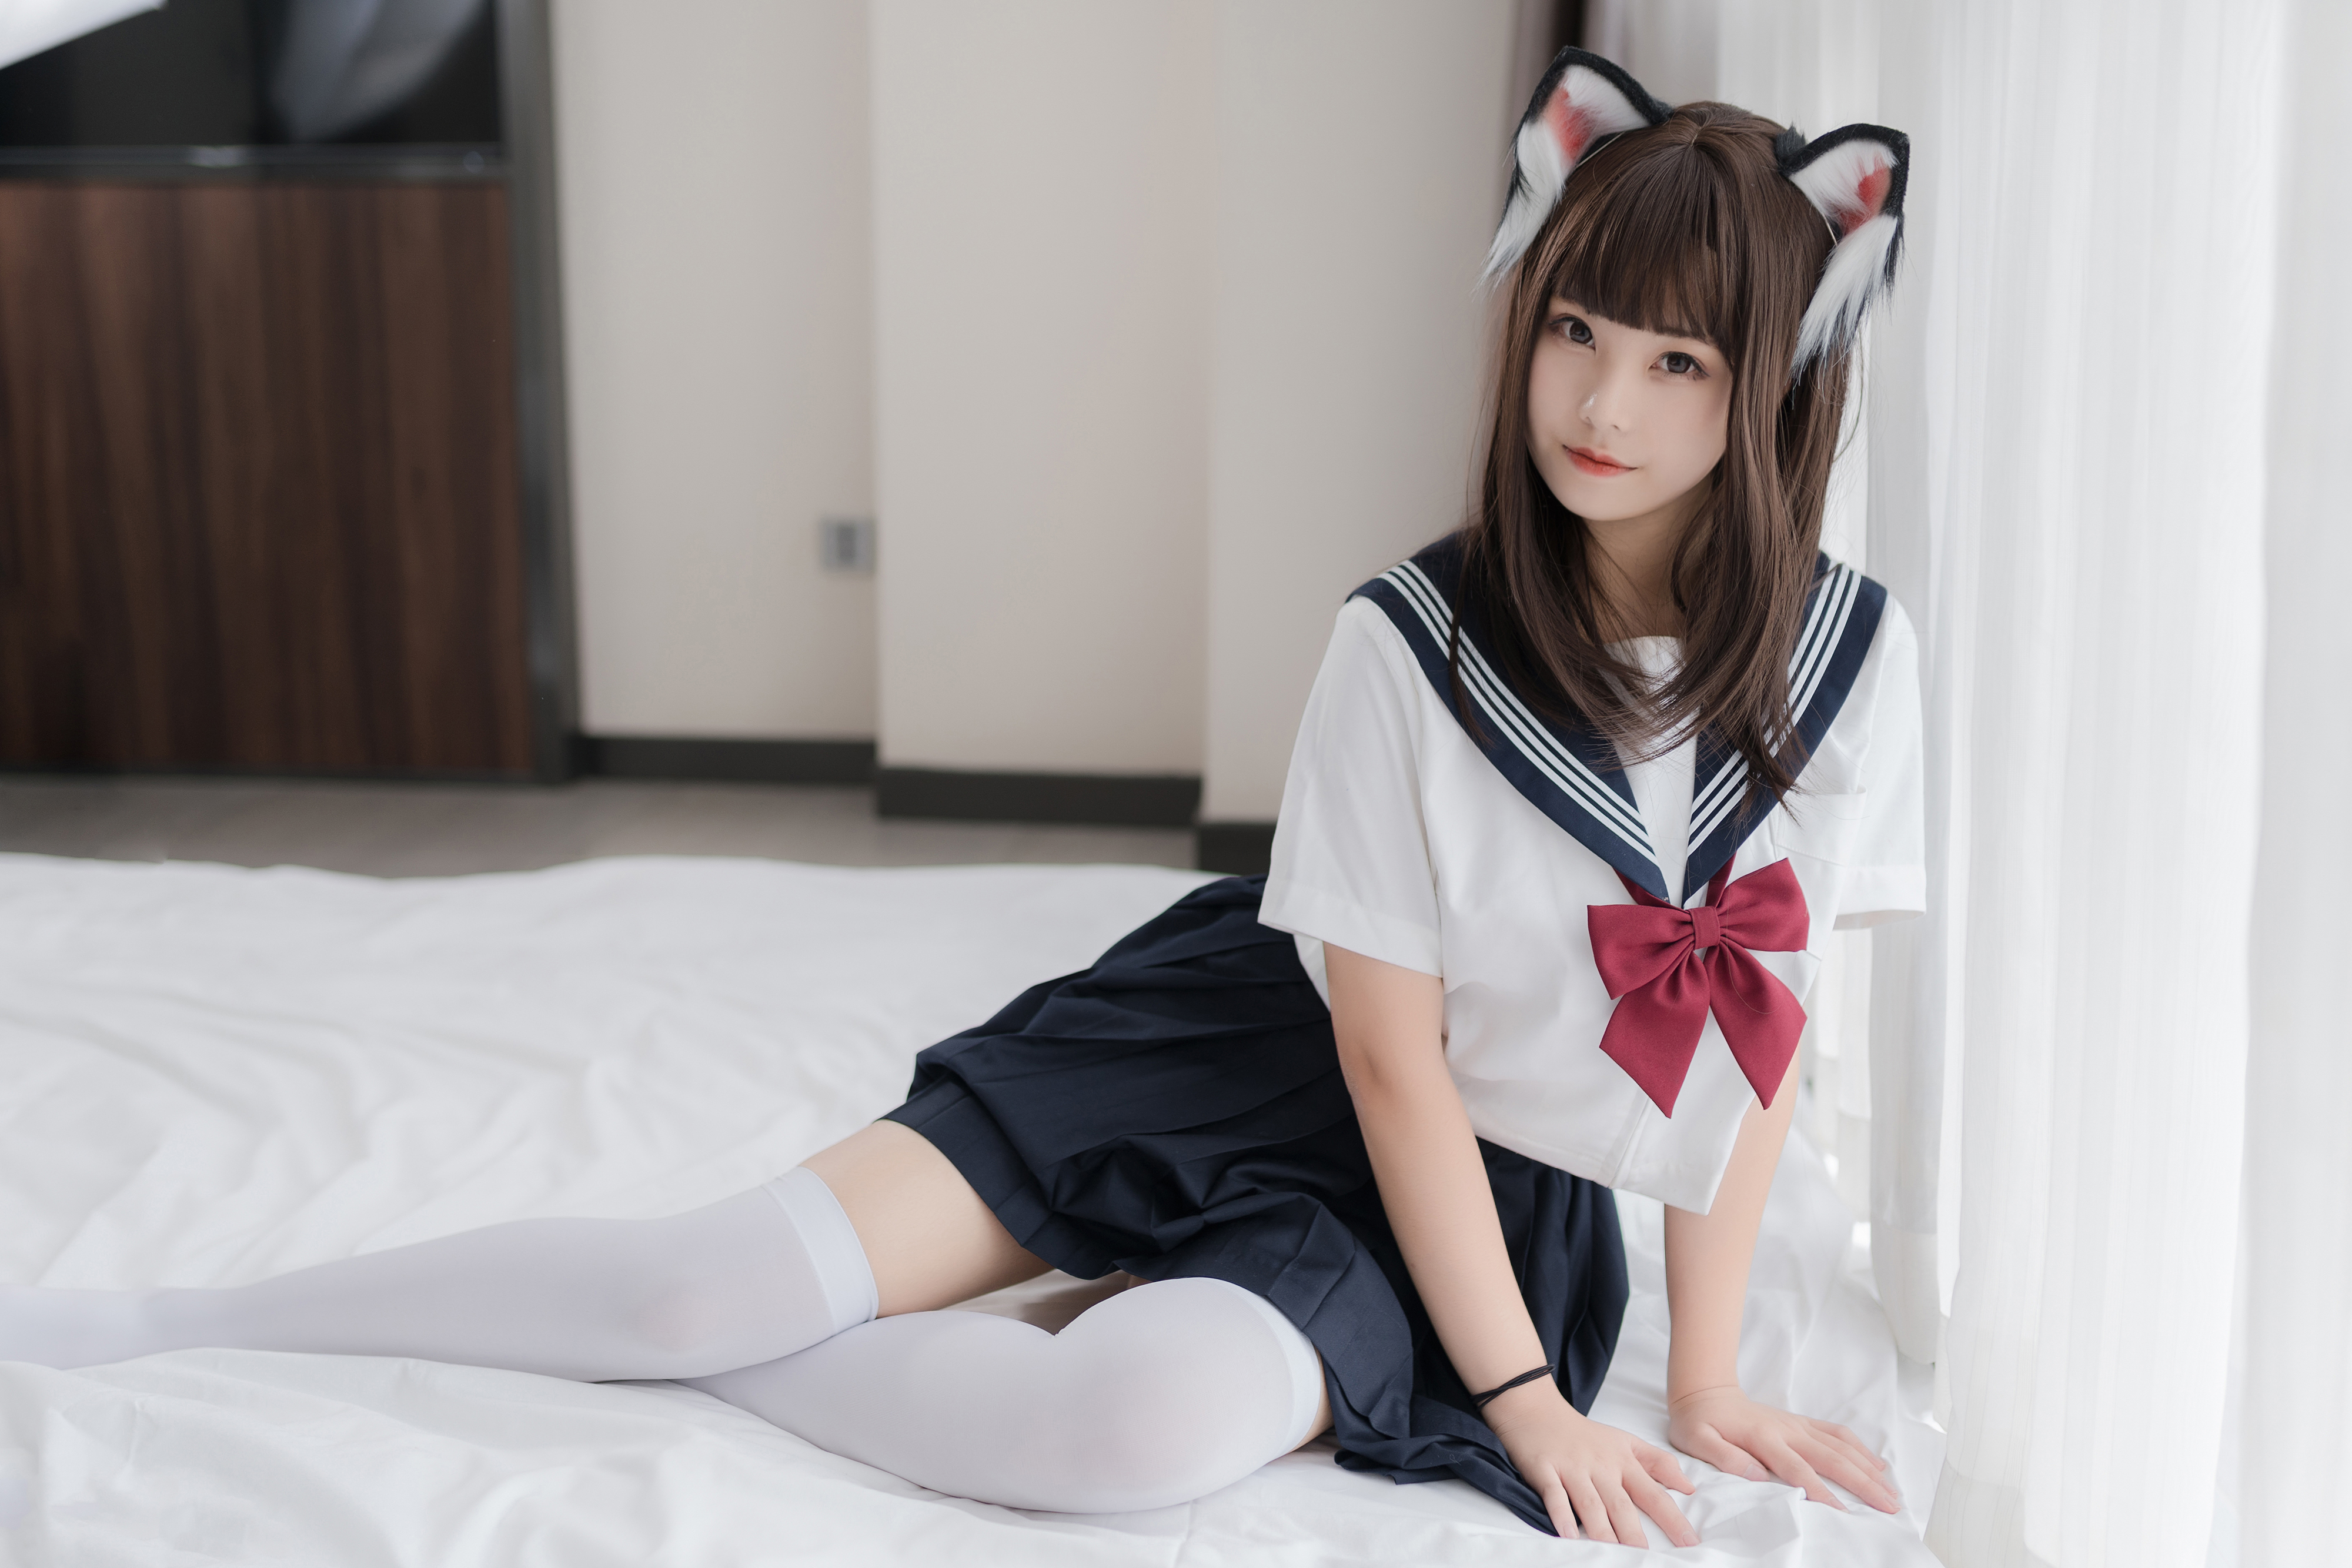 Women Model Asian Asian Cosplayer Cosplay Schoolgirl Nekomimi Cat Ears Cat Girl Sailor Uniform Schoo 4000x2667